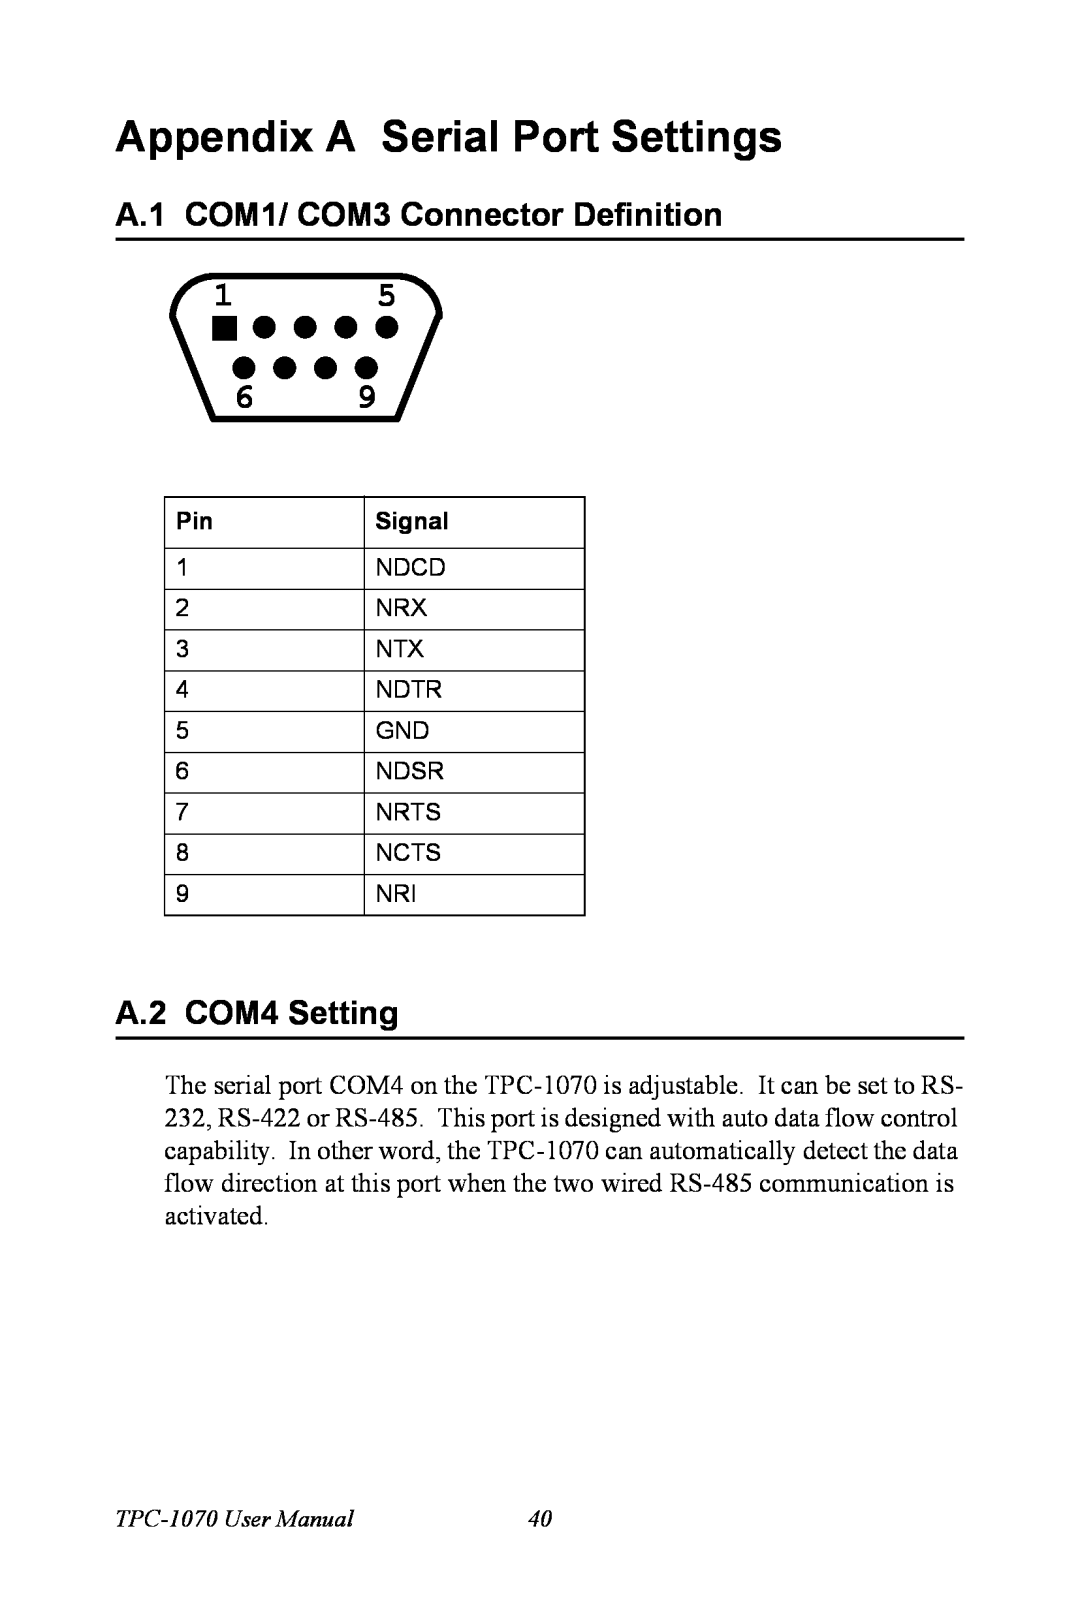 Intel TPC-1070 user manual Appendix A Serial Port Settings, A.1 COM1/ COM3 Connector Definition, A.2 COM4 Setting 